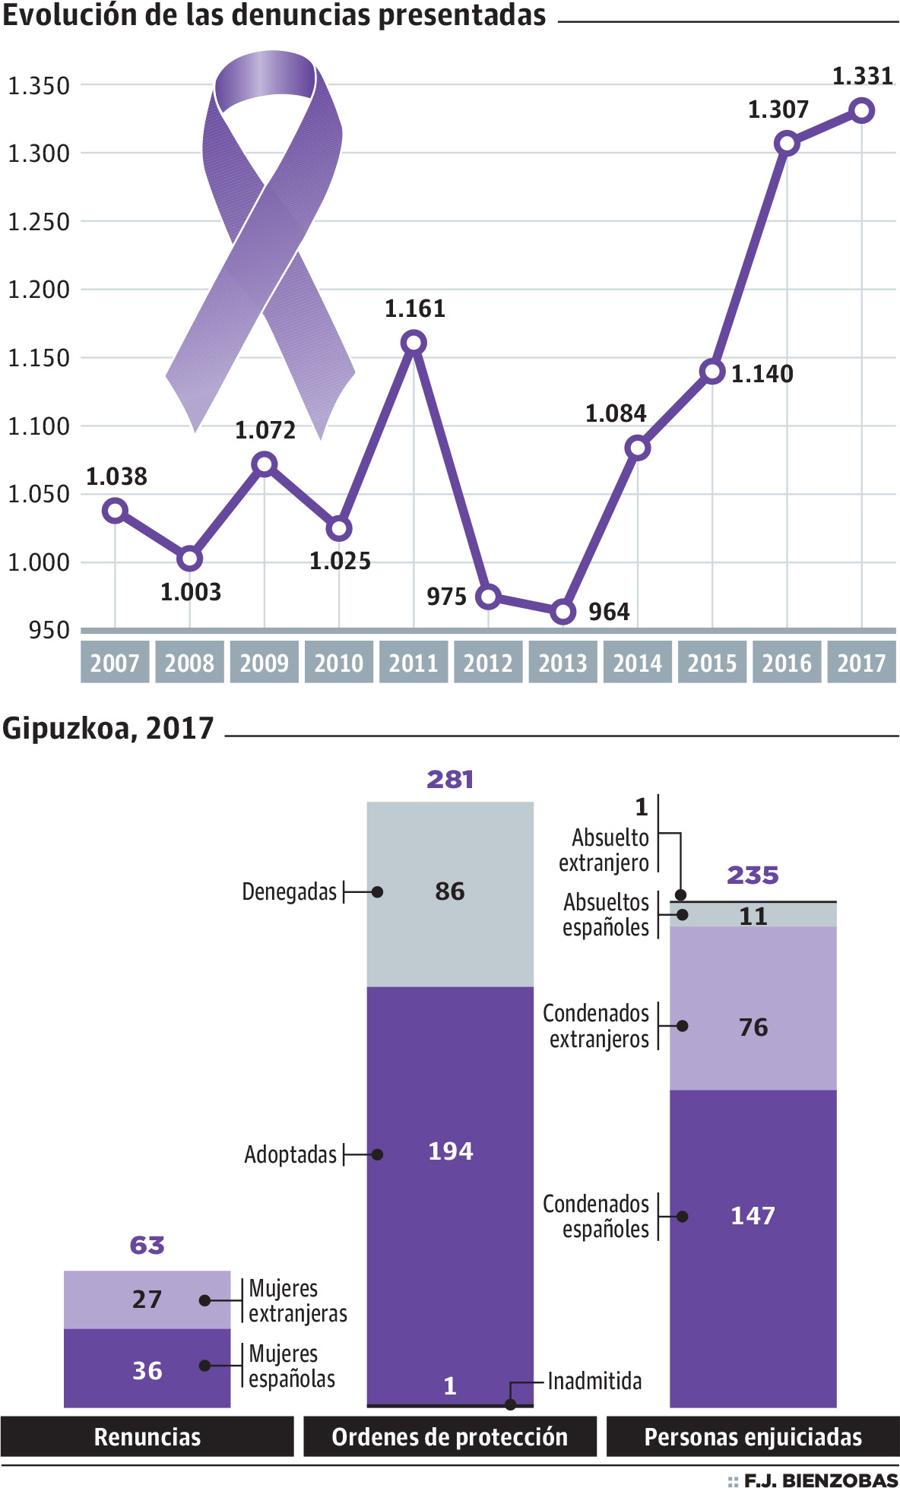 Solo el 5% de las mujeres maltratadas retira la denuncia en Gipuzkoa, la cifra más baja